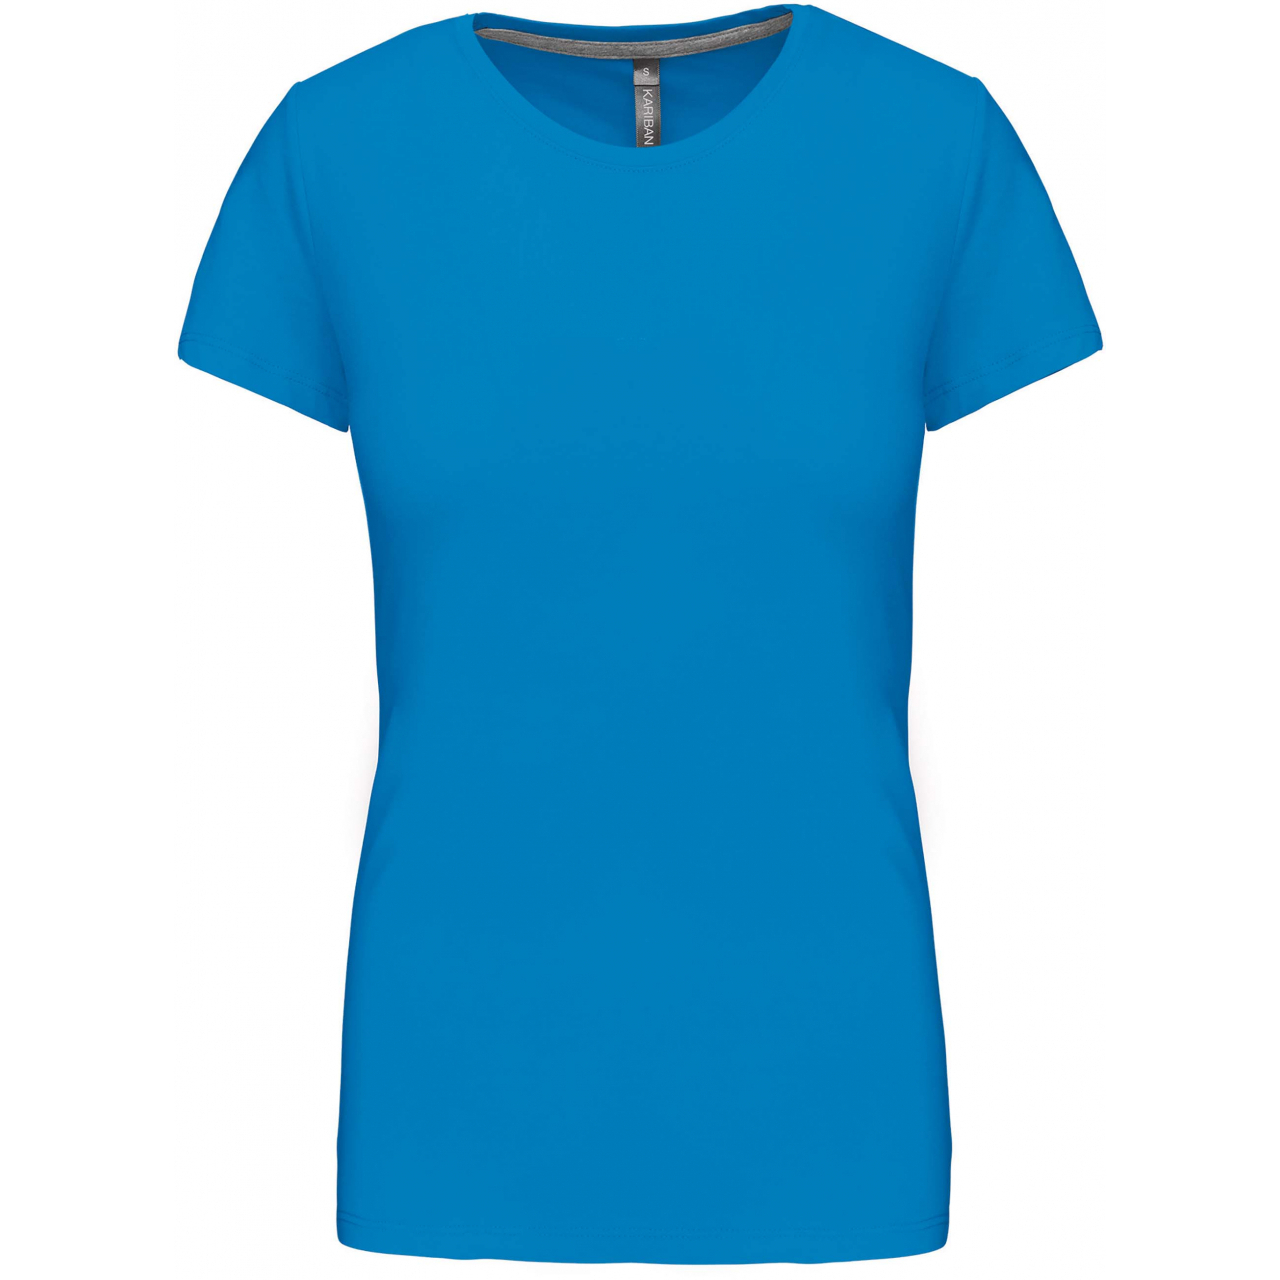 Dámské tričko Kariban s krátkým rukávem - středně modré, XXL